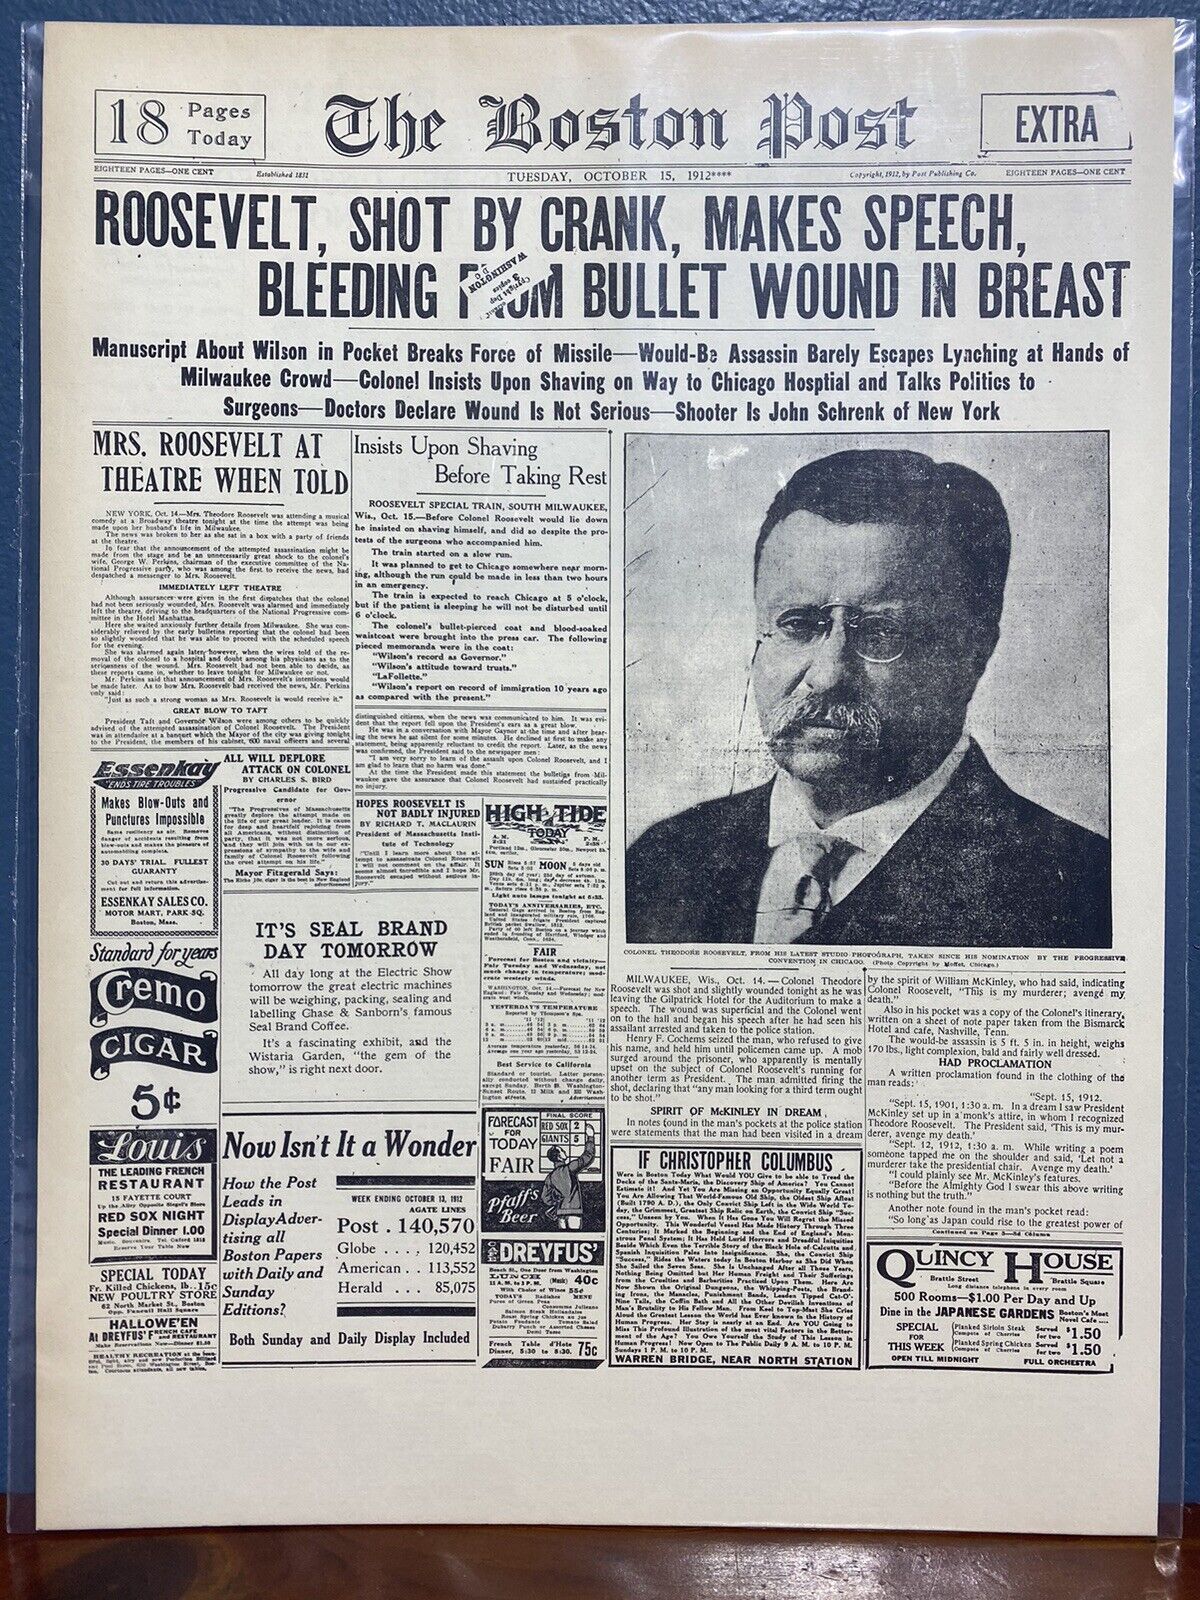 VINTAGE NEWSPAPER HEADLINE TEDDY ROOSEVELT SHOT MAKES SPEECH WOUND BLEEDING 1912